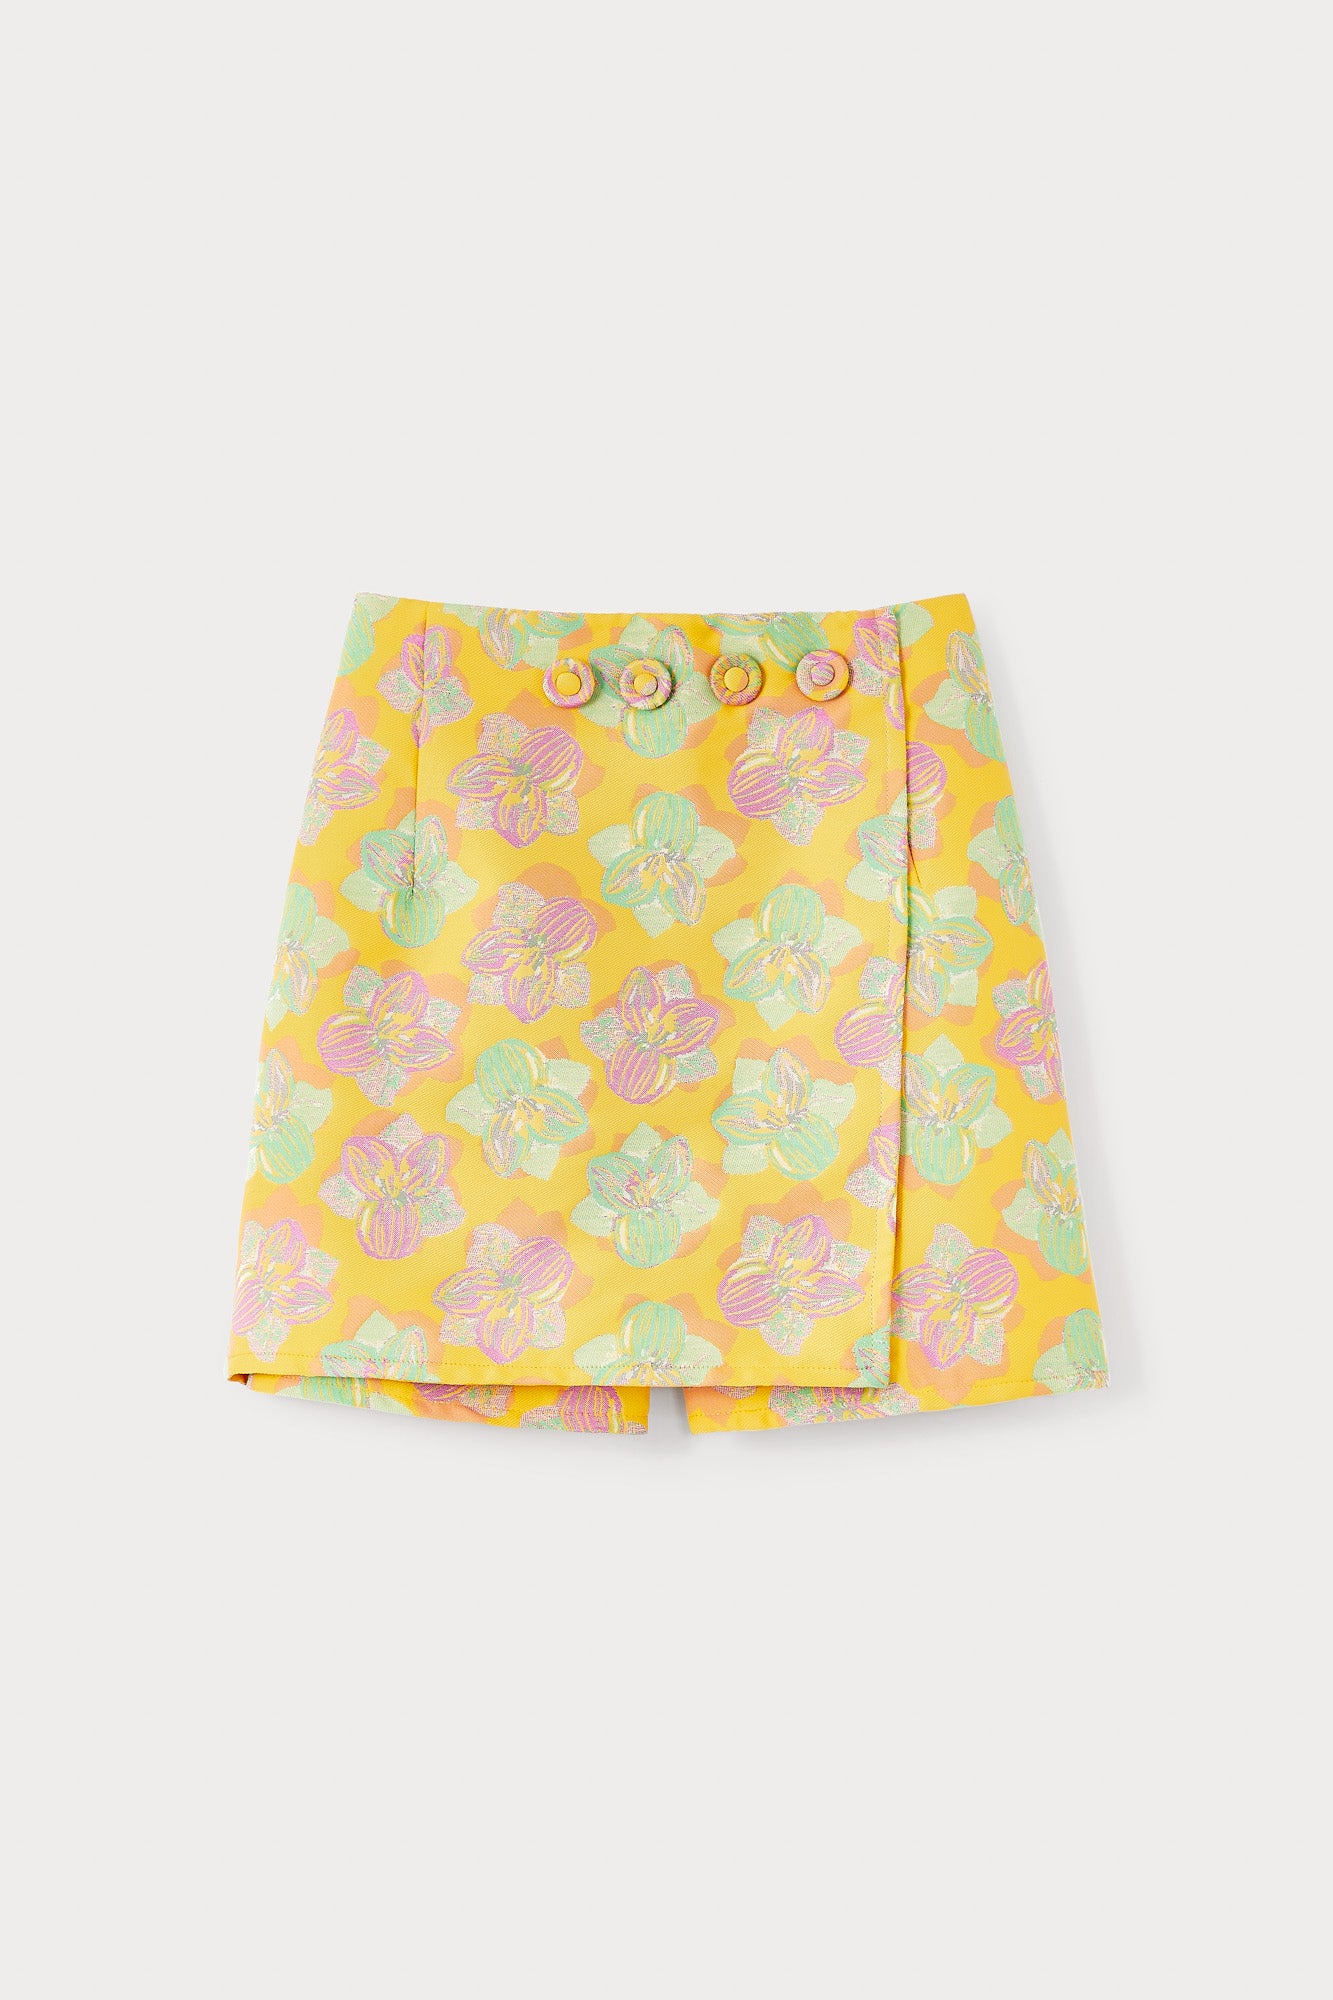 Jupe-short florale jaune, rose et vert clair avec boutons